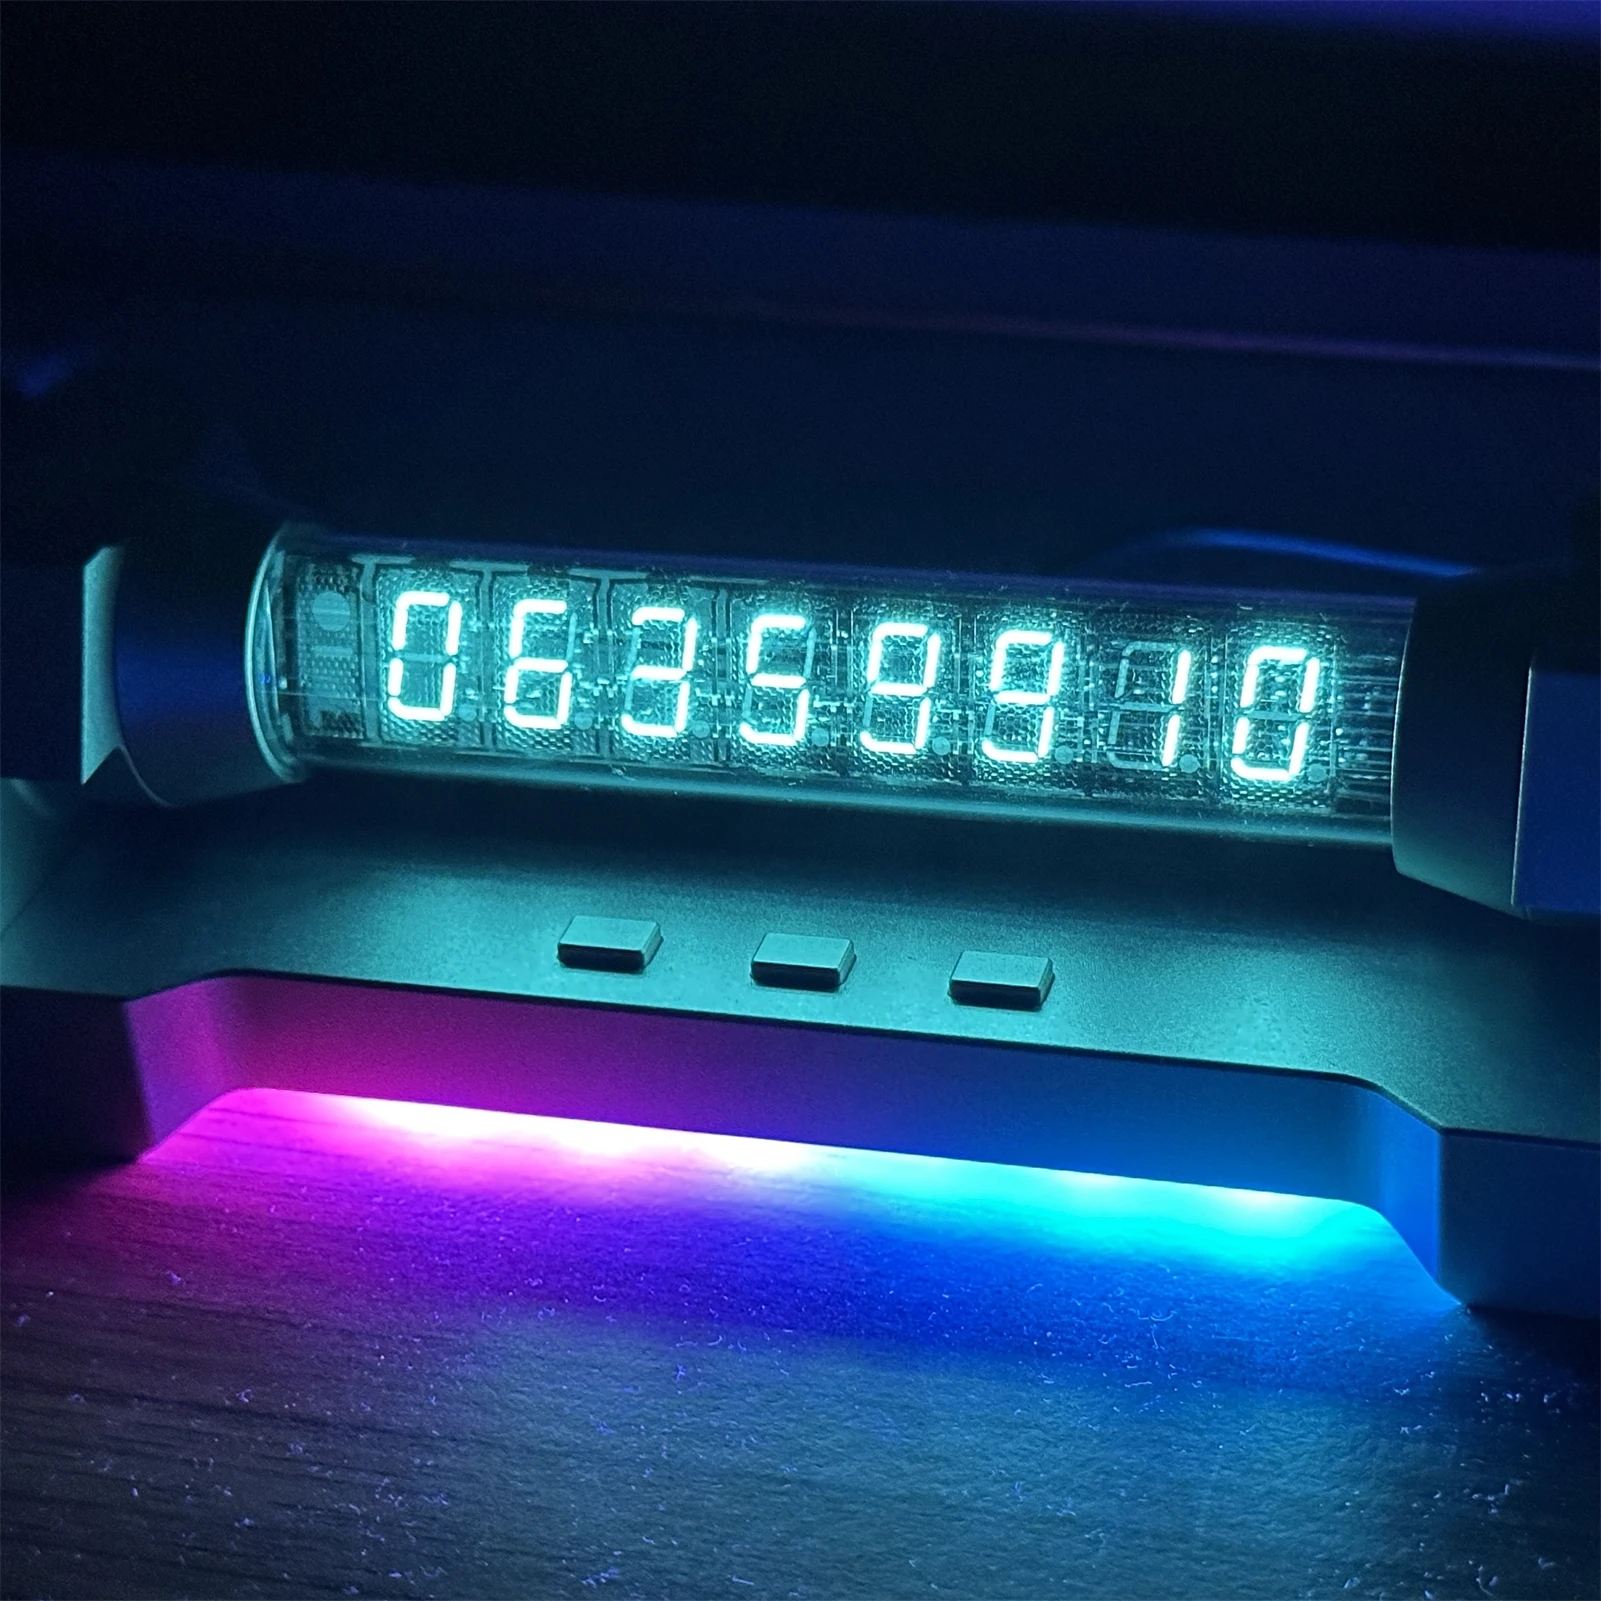 

Светящаяся трубка IV18, флуоресцентные трубчатые часы RGB Cyberpunk VFD Geek Nixie, цифровое украшение, настольный подарок, креативный орнамент, будильник